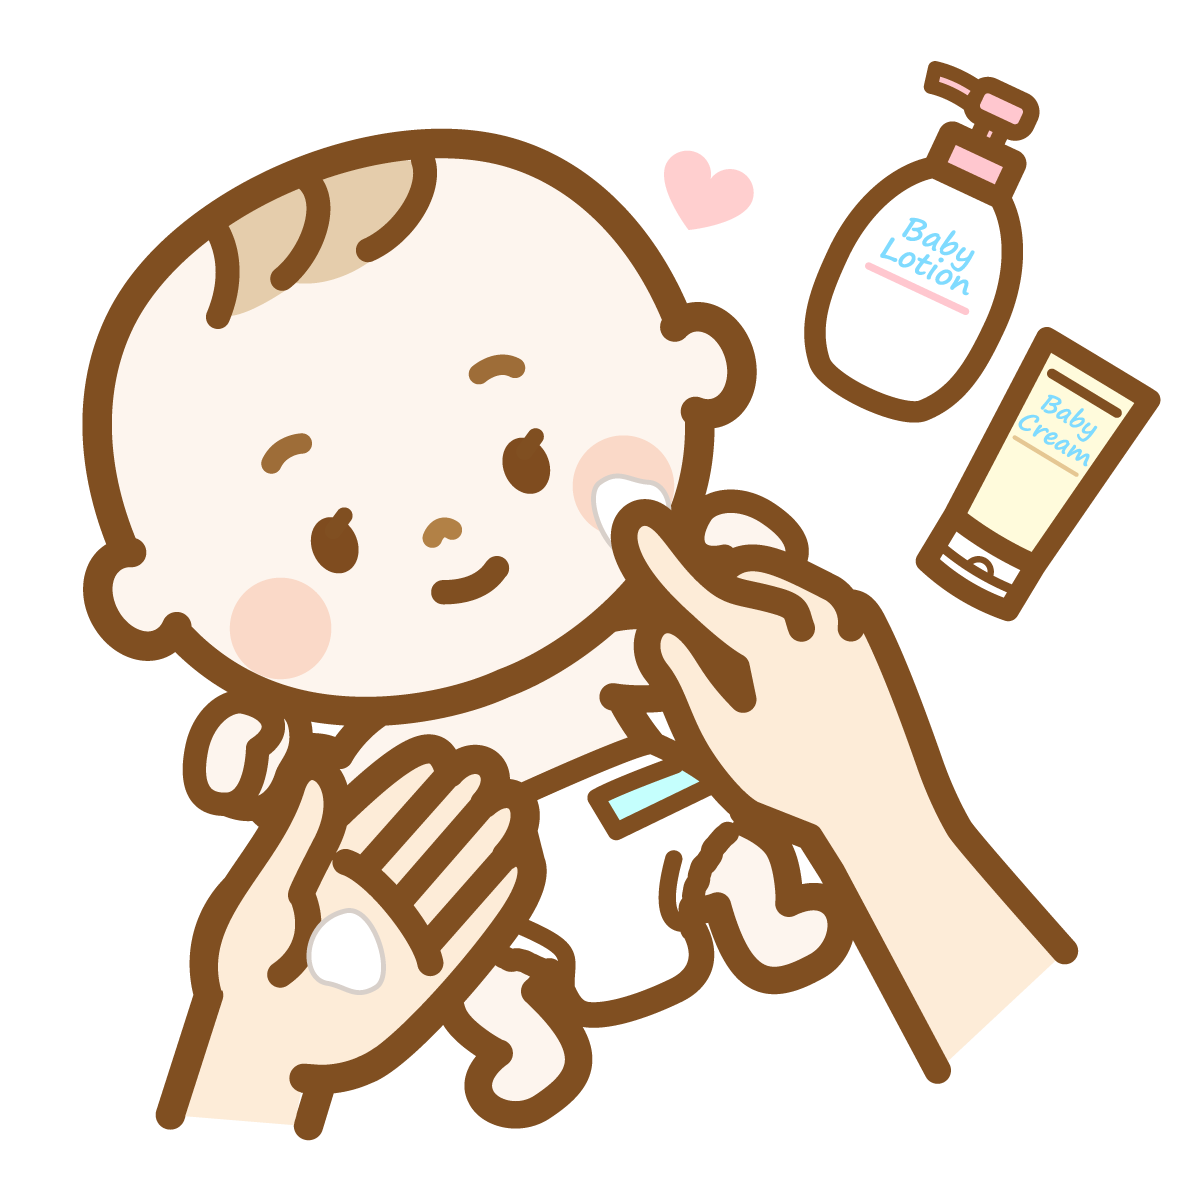 アトピー性皮膚炎発症予防において、Fam's baby保湿剤は、2e（デューエ）保湿剤より有効か？：PAF試験